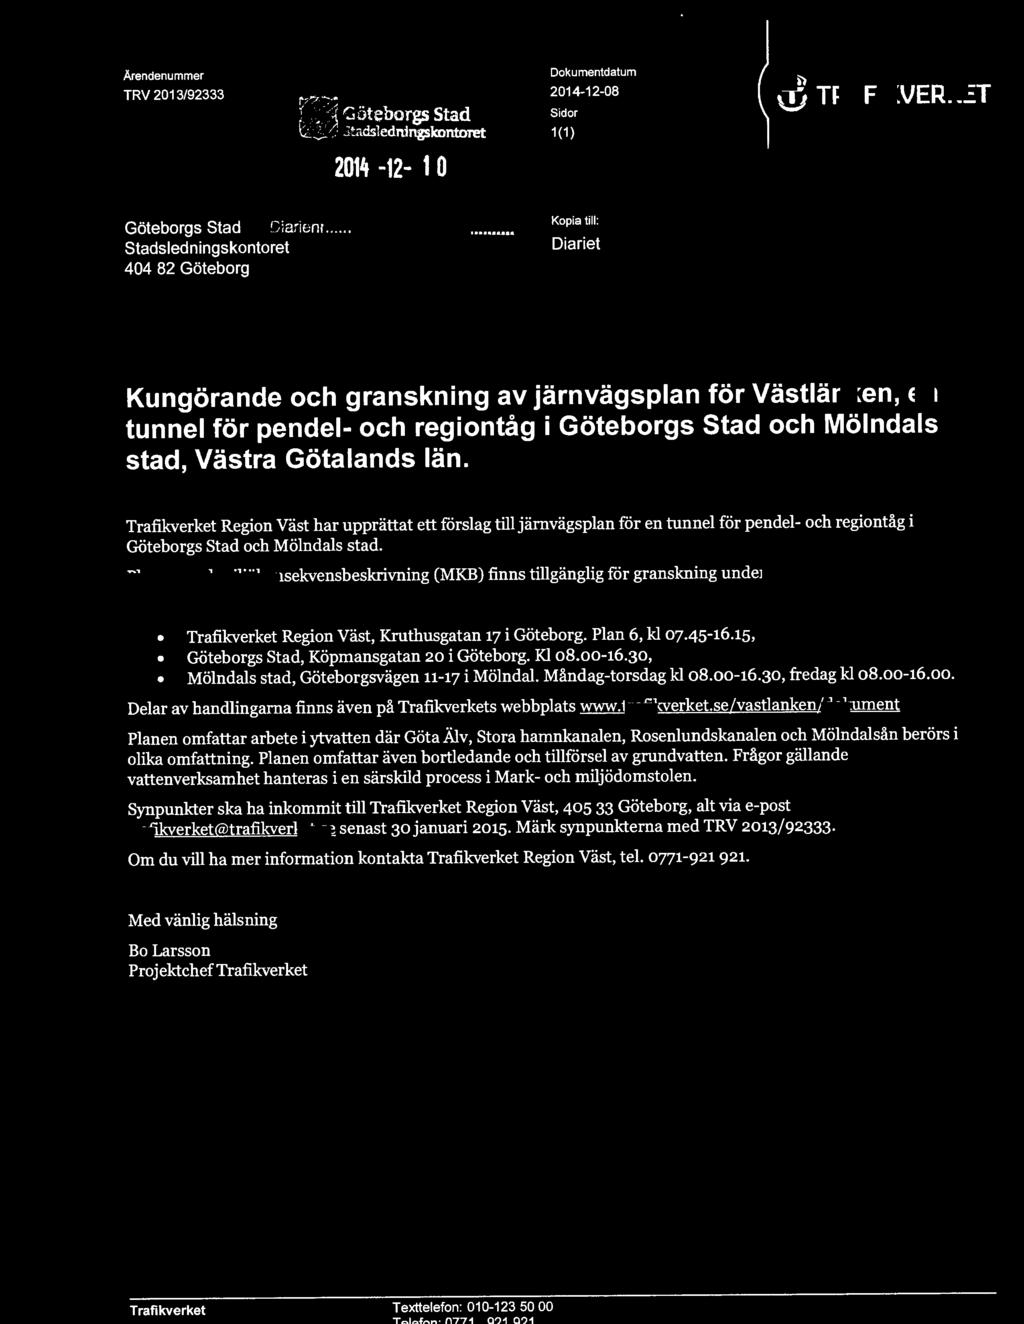 j TRAFIKVERKET Kungörande och granskning av järnvägsplan för Västlänken, en tunnel för pendel- och regiontåg i Göteborgs Stad och Mölndals stad, Västra Götalands län.